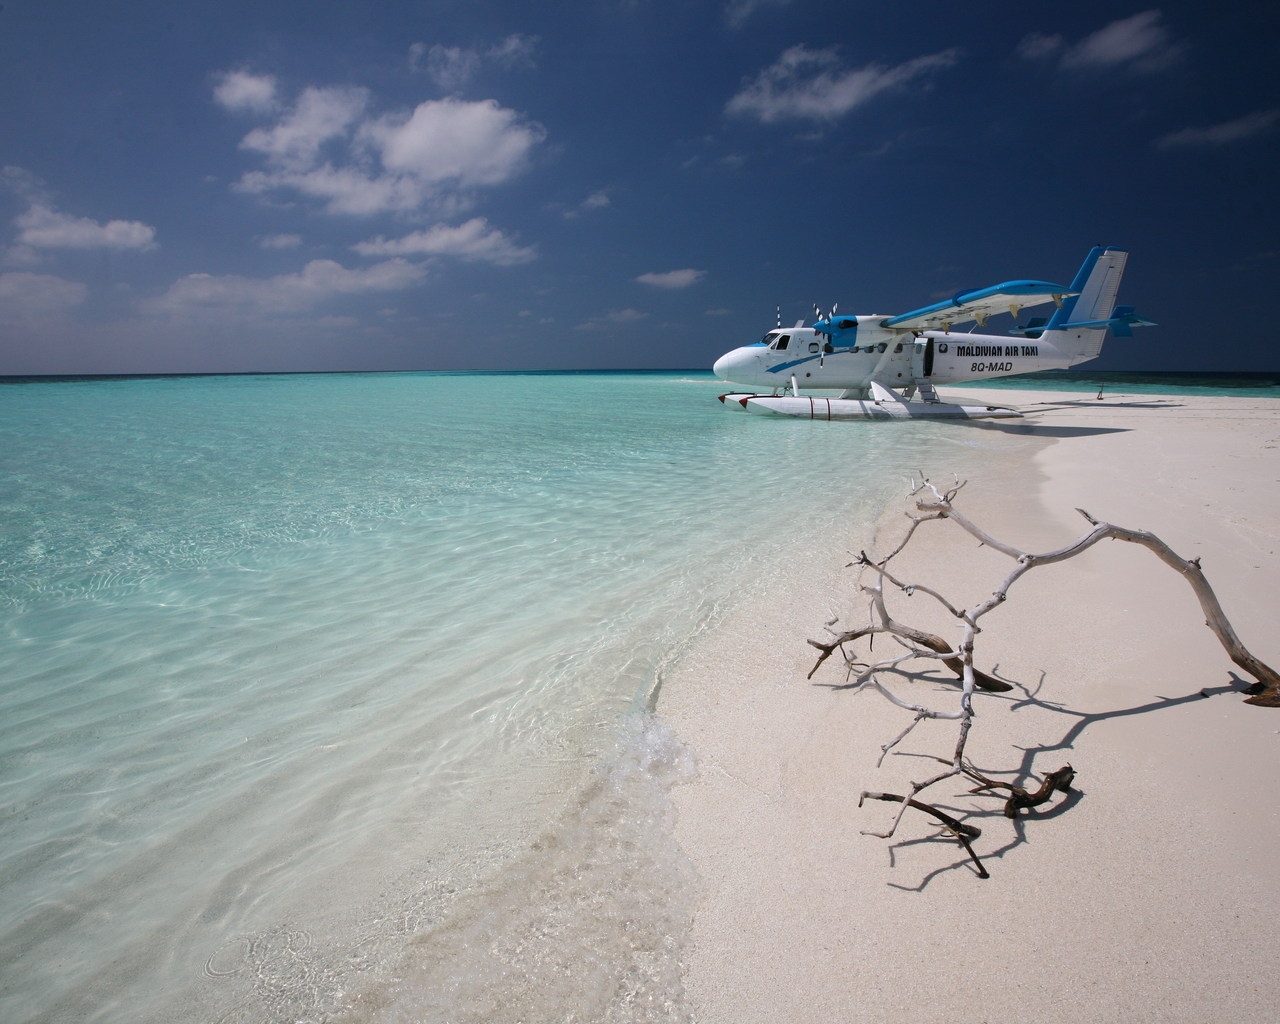 Maldivian Air Taxi for 1280 x 1024 resolution